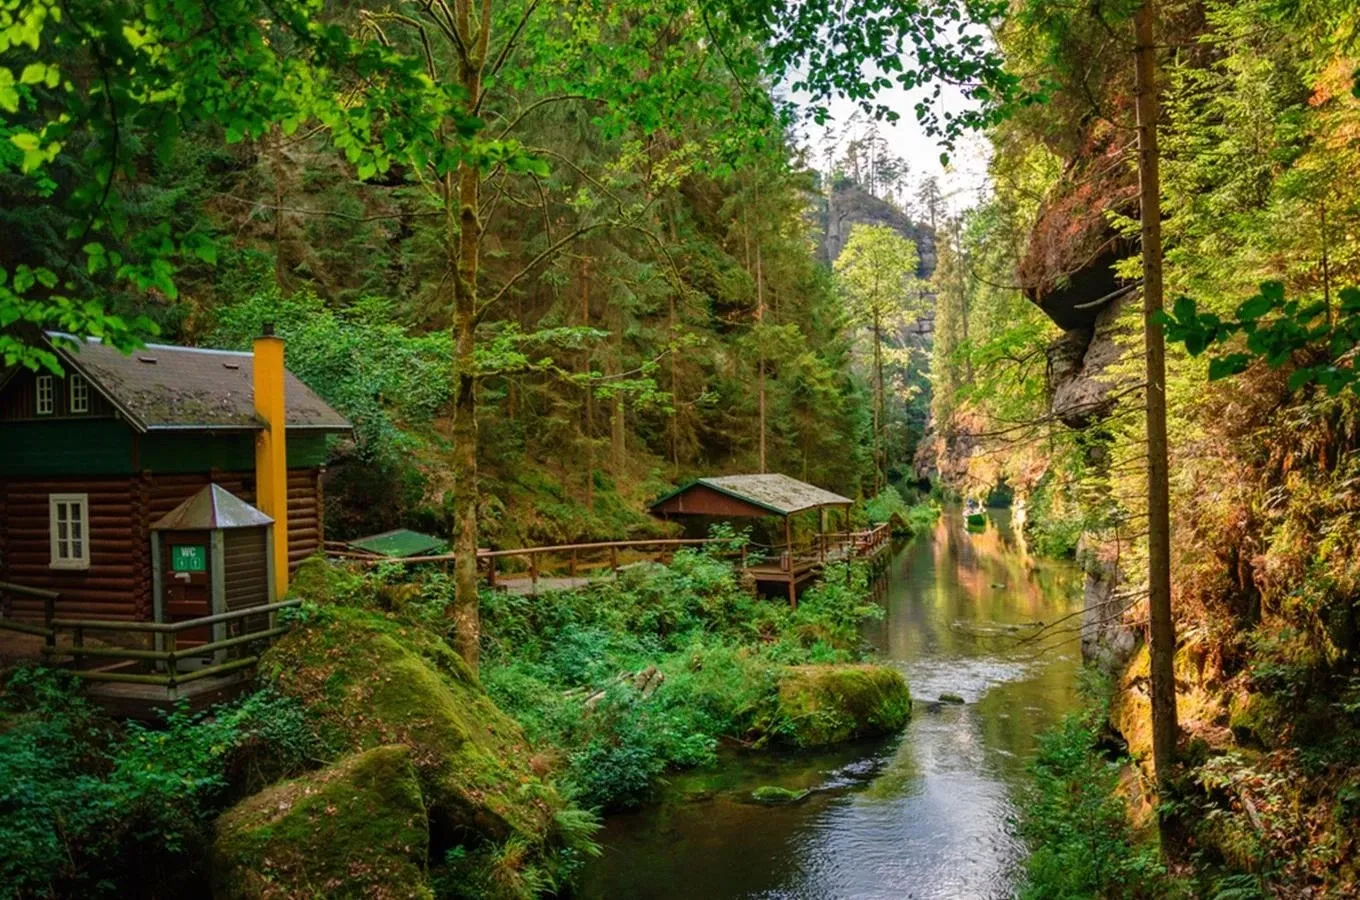 bohemian-switzerland-national-park-gorge